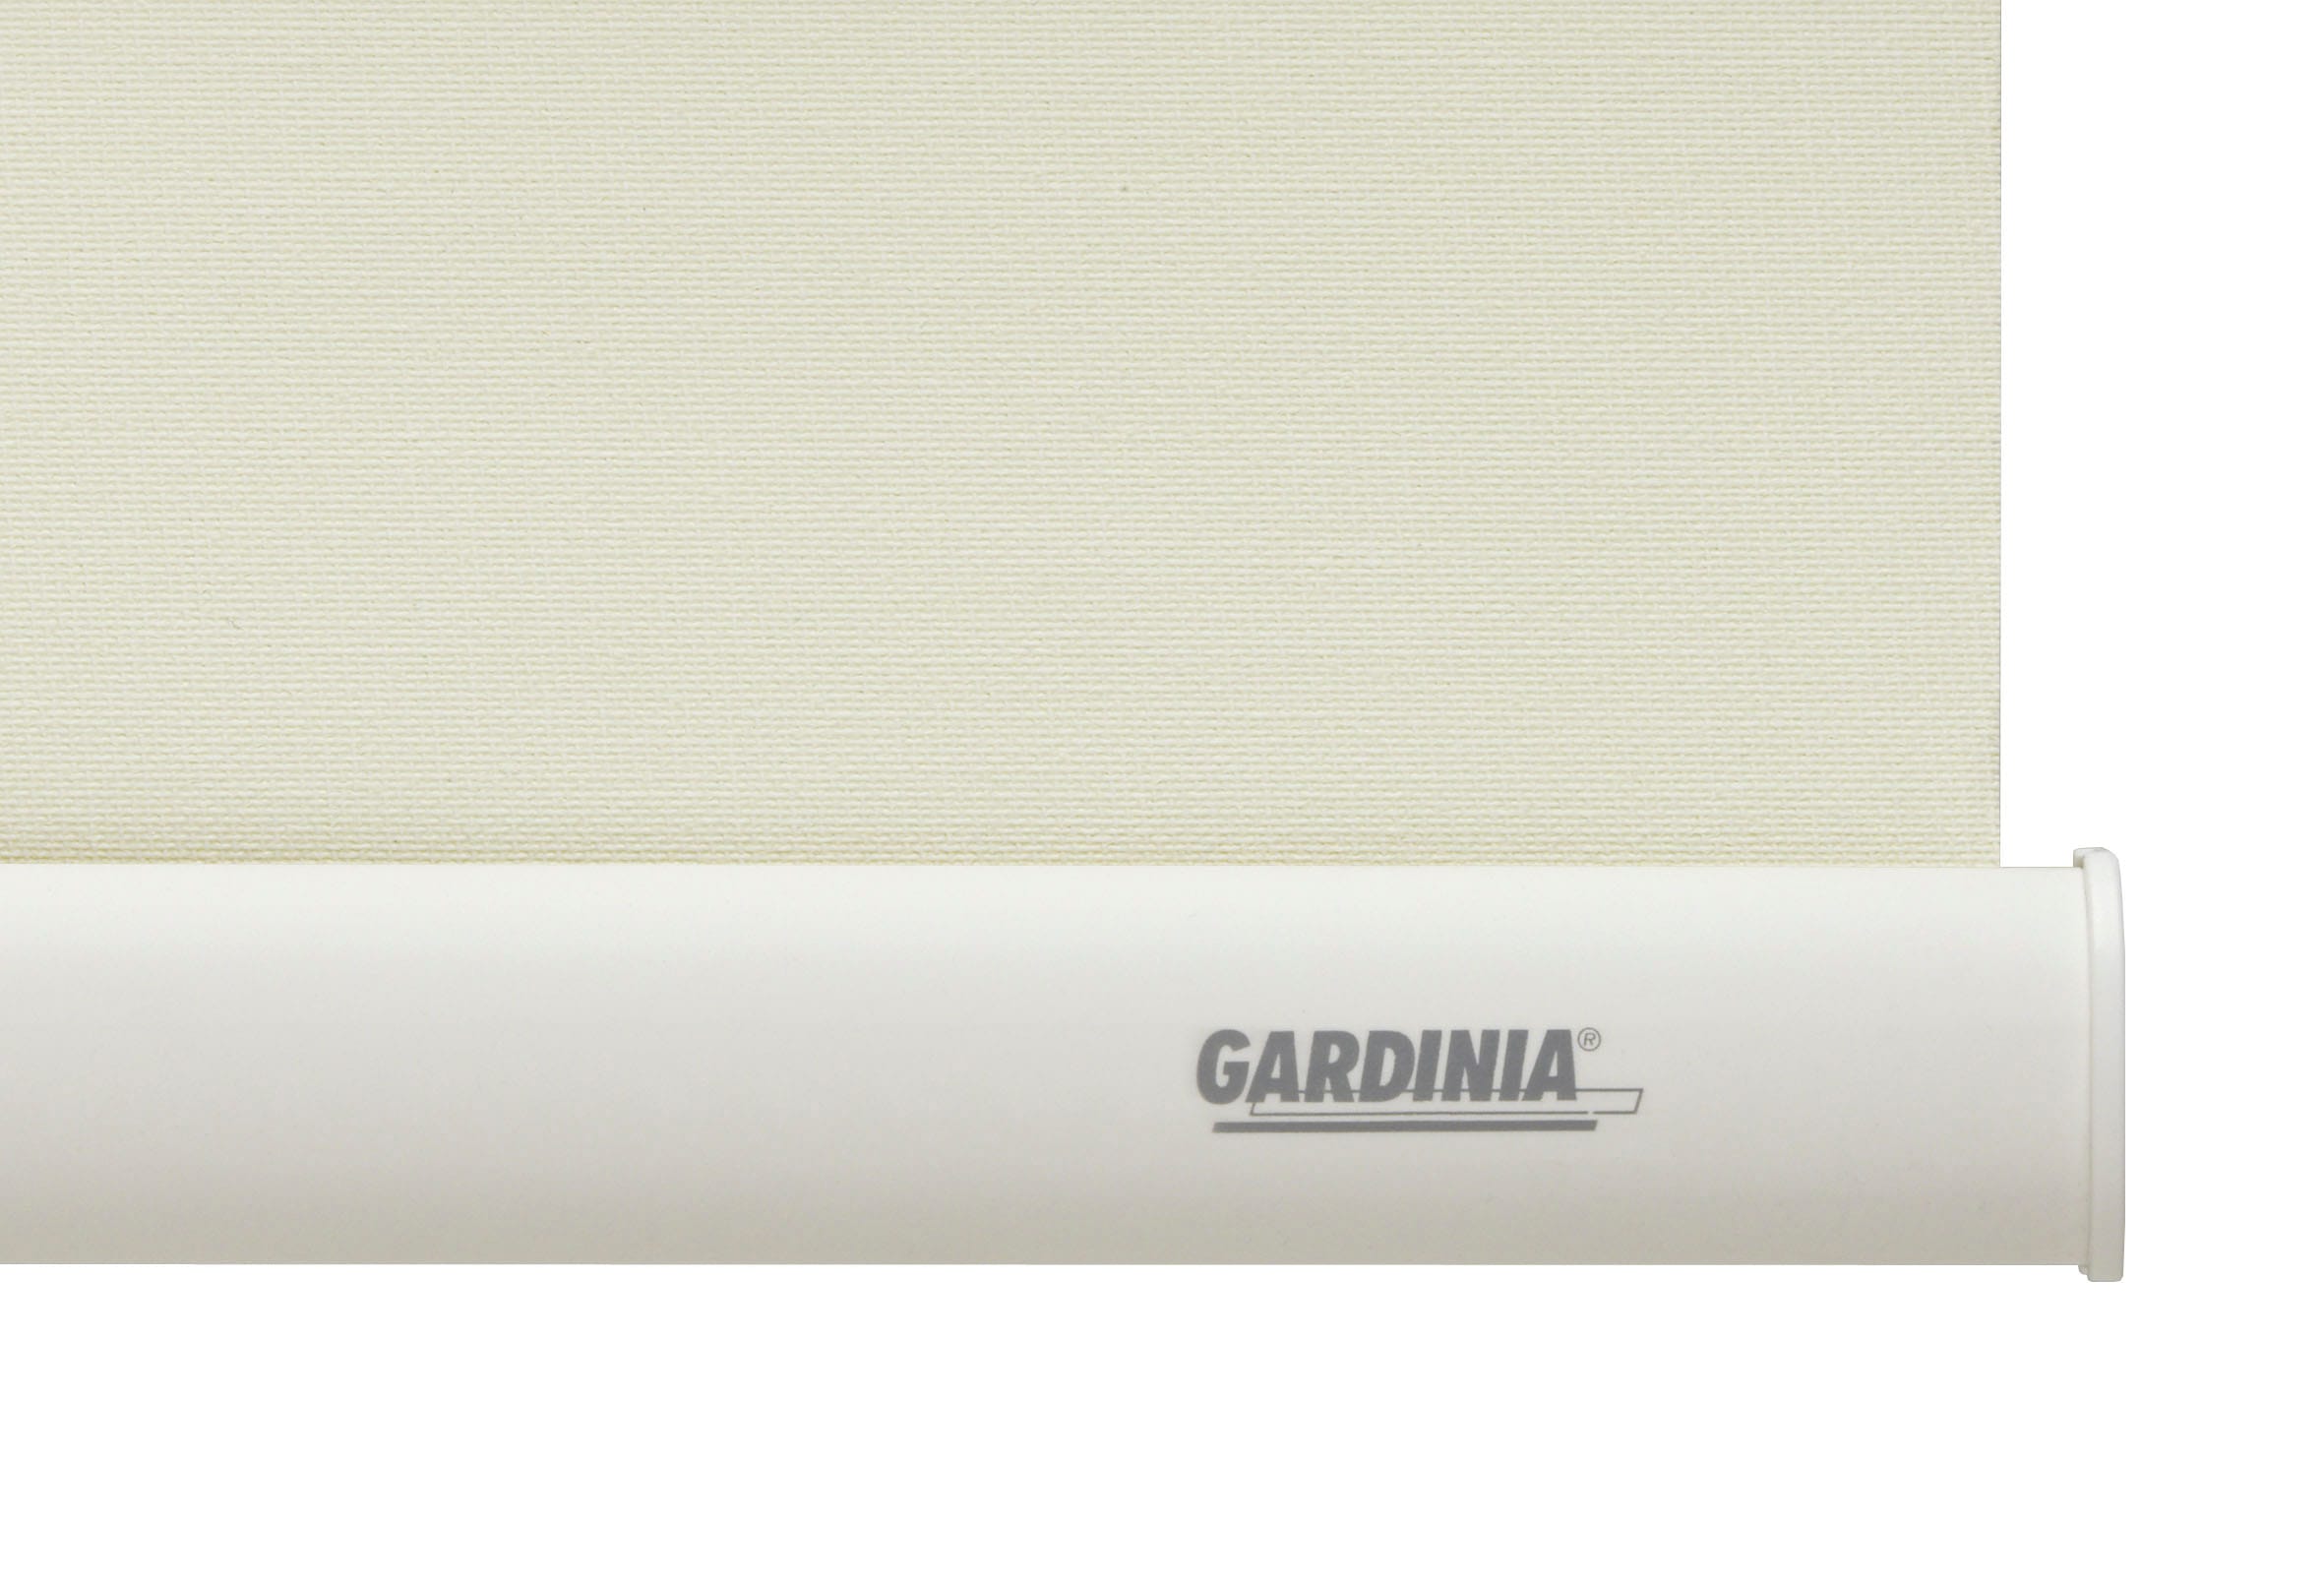 GARDINIA Seitenzugrollo »Uni-Rollo - Thermo Energiesparend«, verdunkelnd, energiesparend, Abschlussprofil in weiss